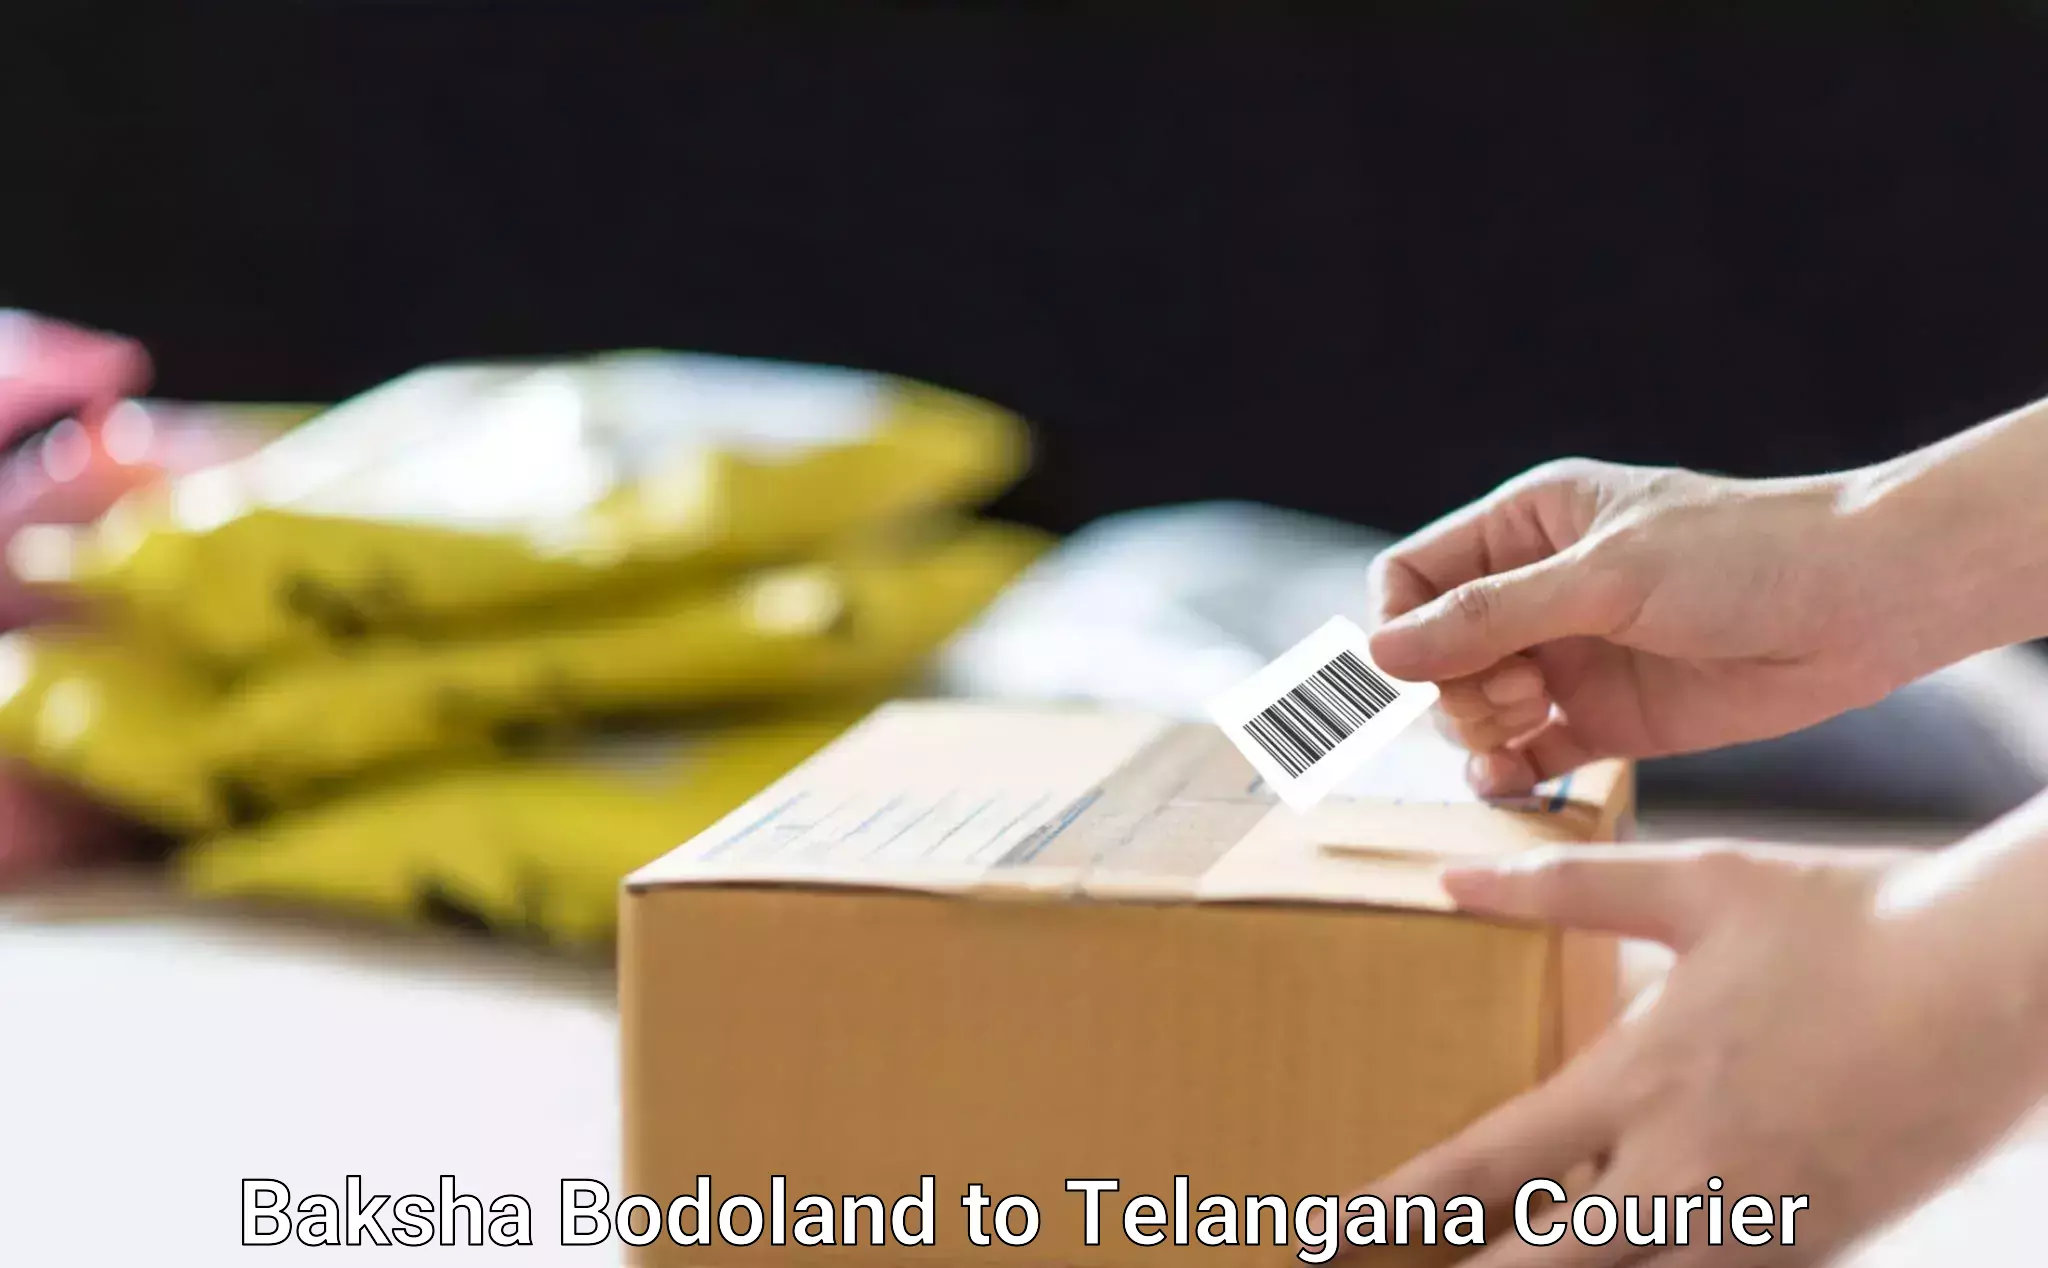 Customized delivery options Baksha Bodoland to Marikal